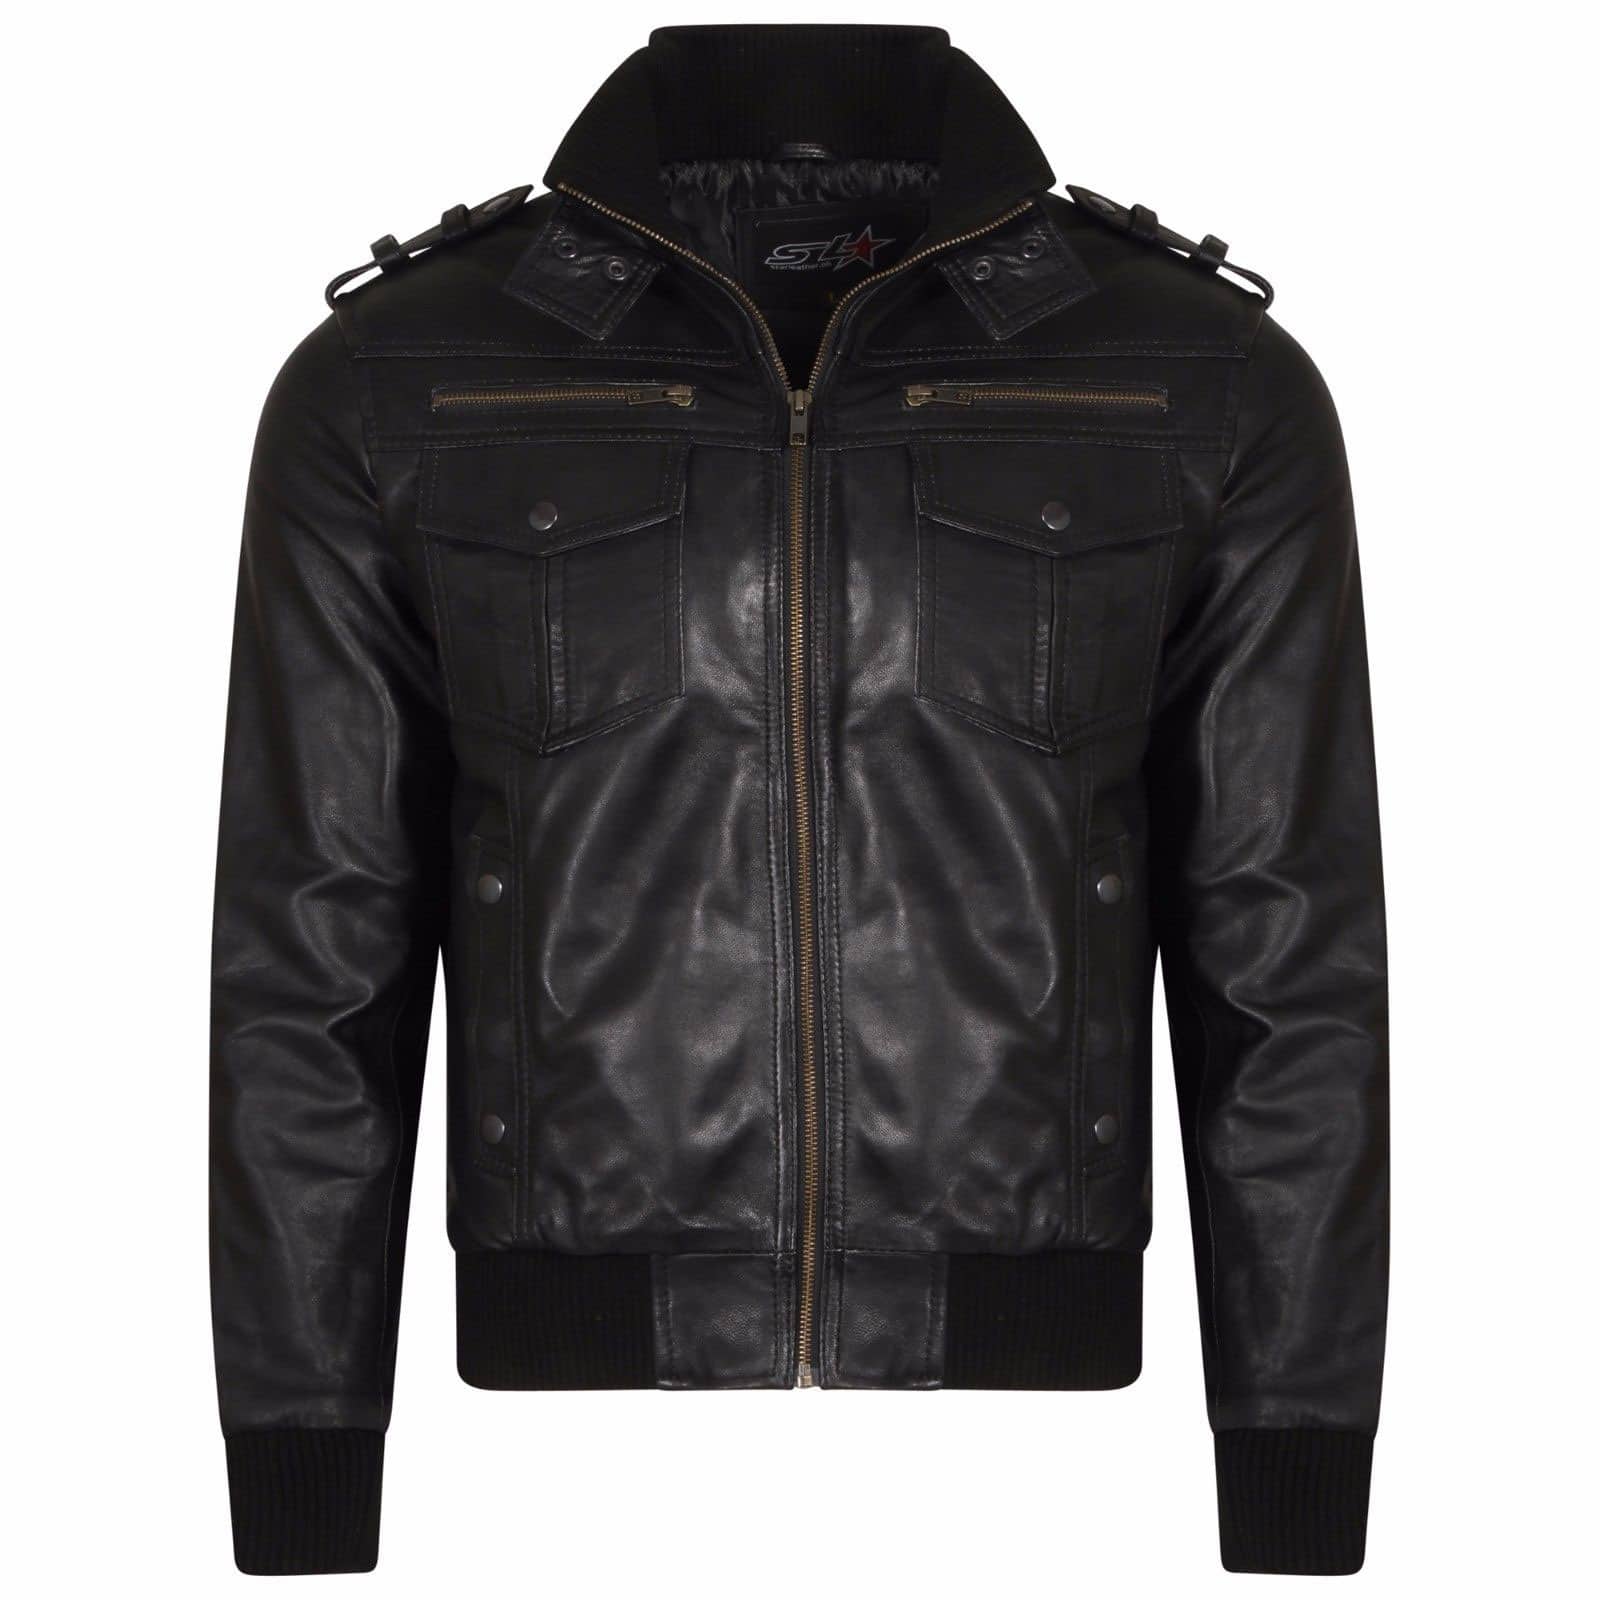 Men-Slim-Biker-Motorcycle-Jacket-Soft-Leather-Jacket